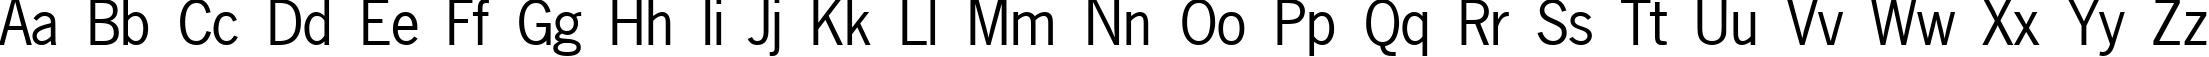 Пример написания английского алфавита шрифтом NewsGothic